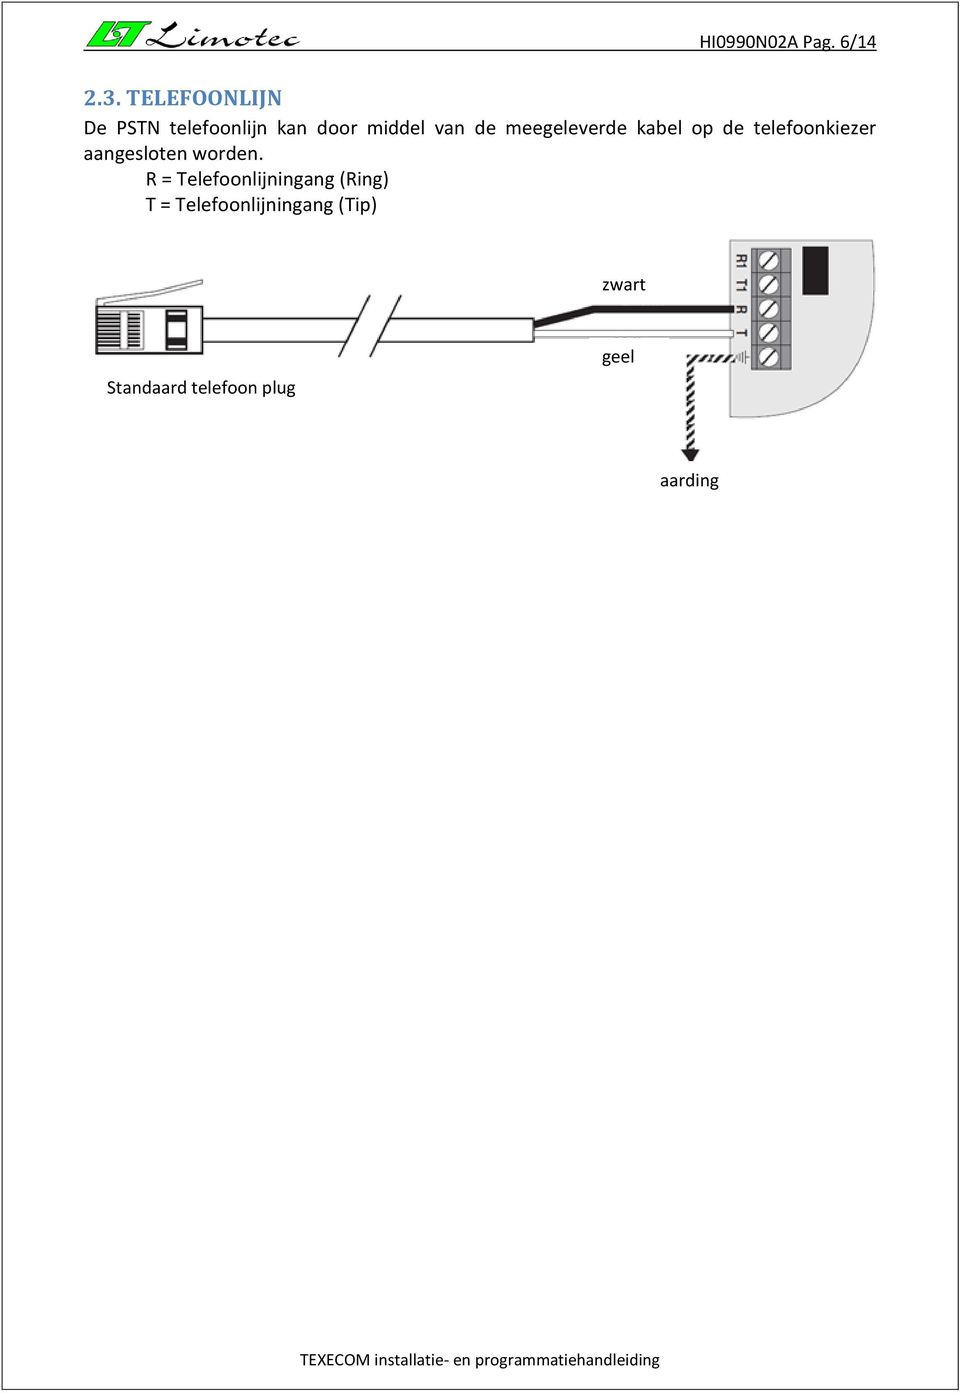 meegeleverde kabel op de telefoonkiezer aangesloten worden.